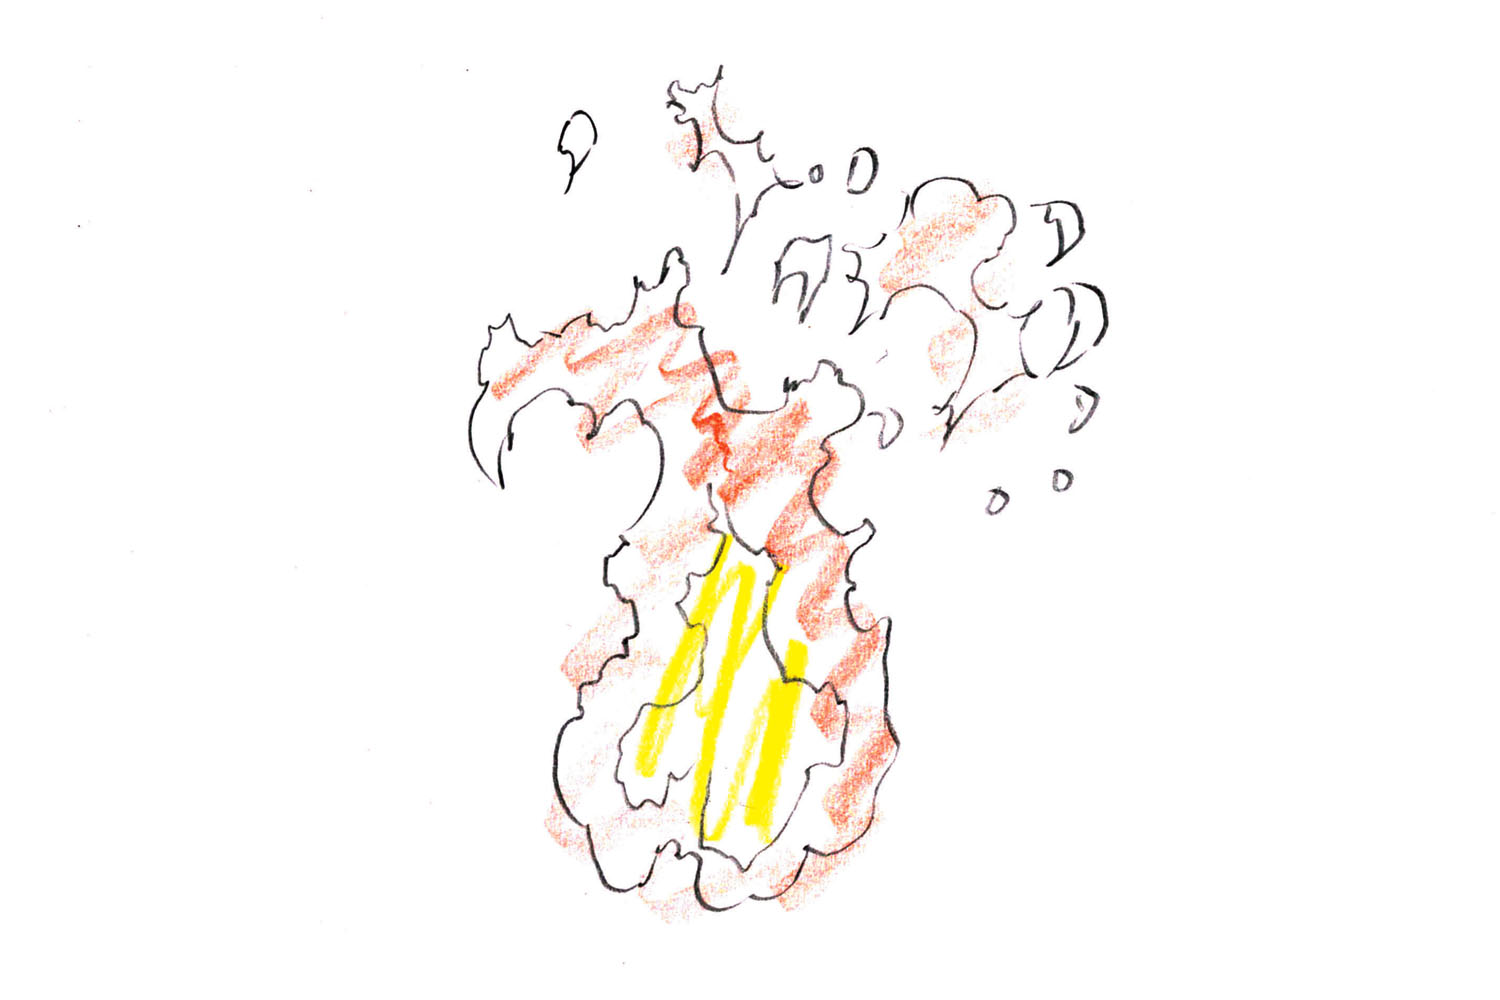 アニメーター小澤和則のエフェクト作画のテクニック 炎の動き を自然に表現する方法 ガジェット通信 Getnews